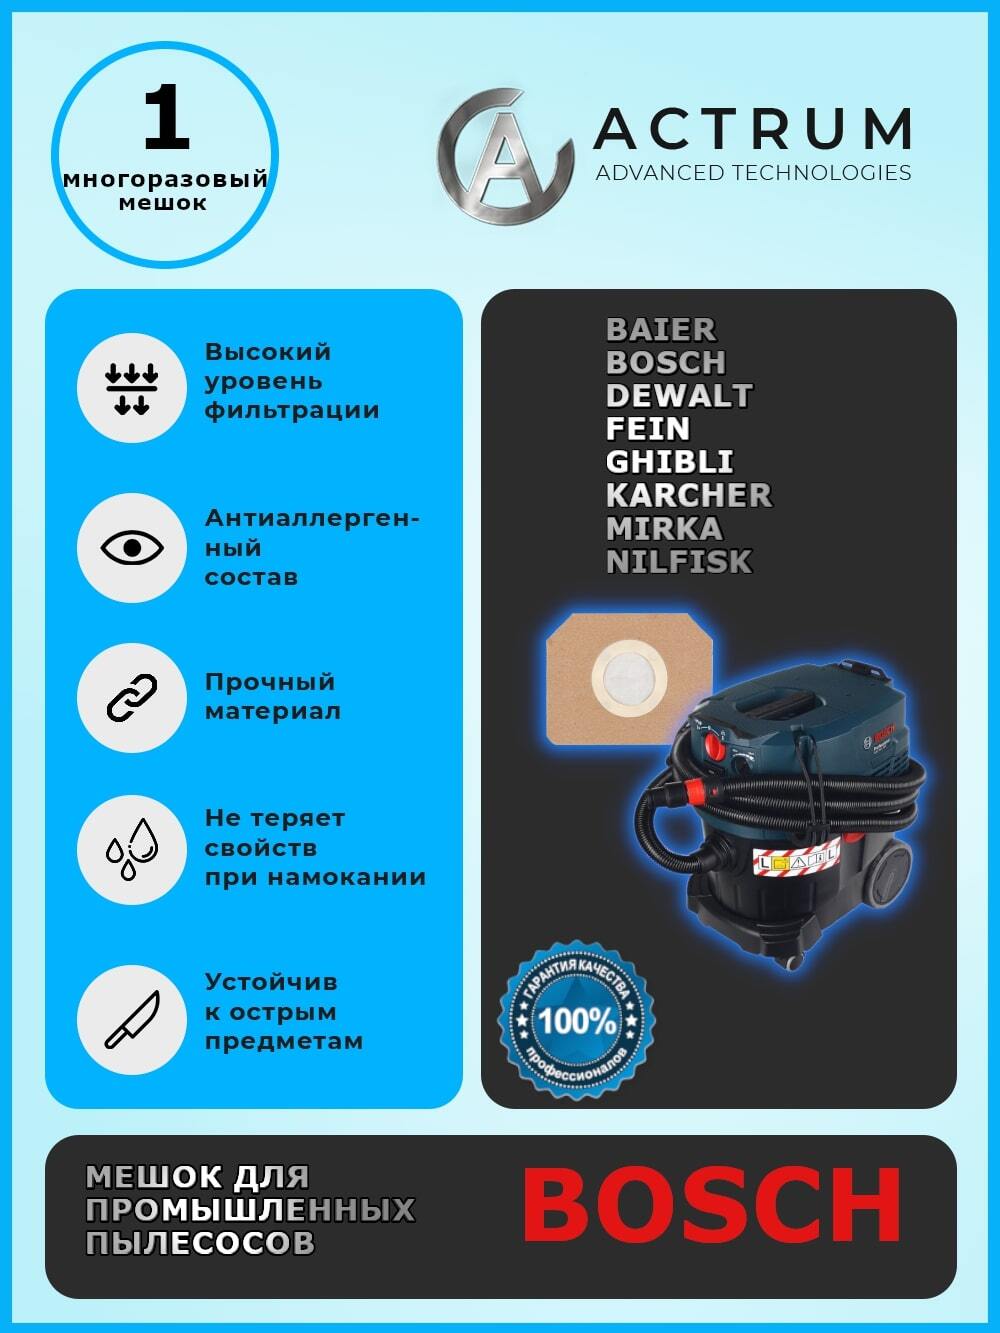 Пылесборник АК032M для промышленных пылесосов BAIER, BOSCH, DEWALT, GHIBLI, KARCHER автомойка аккумуляторная karcher k2 battery подарок